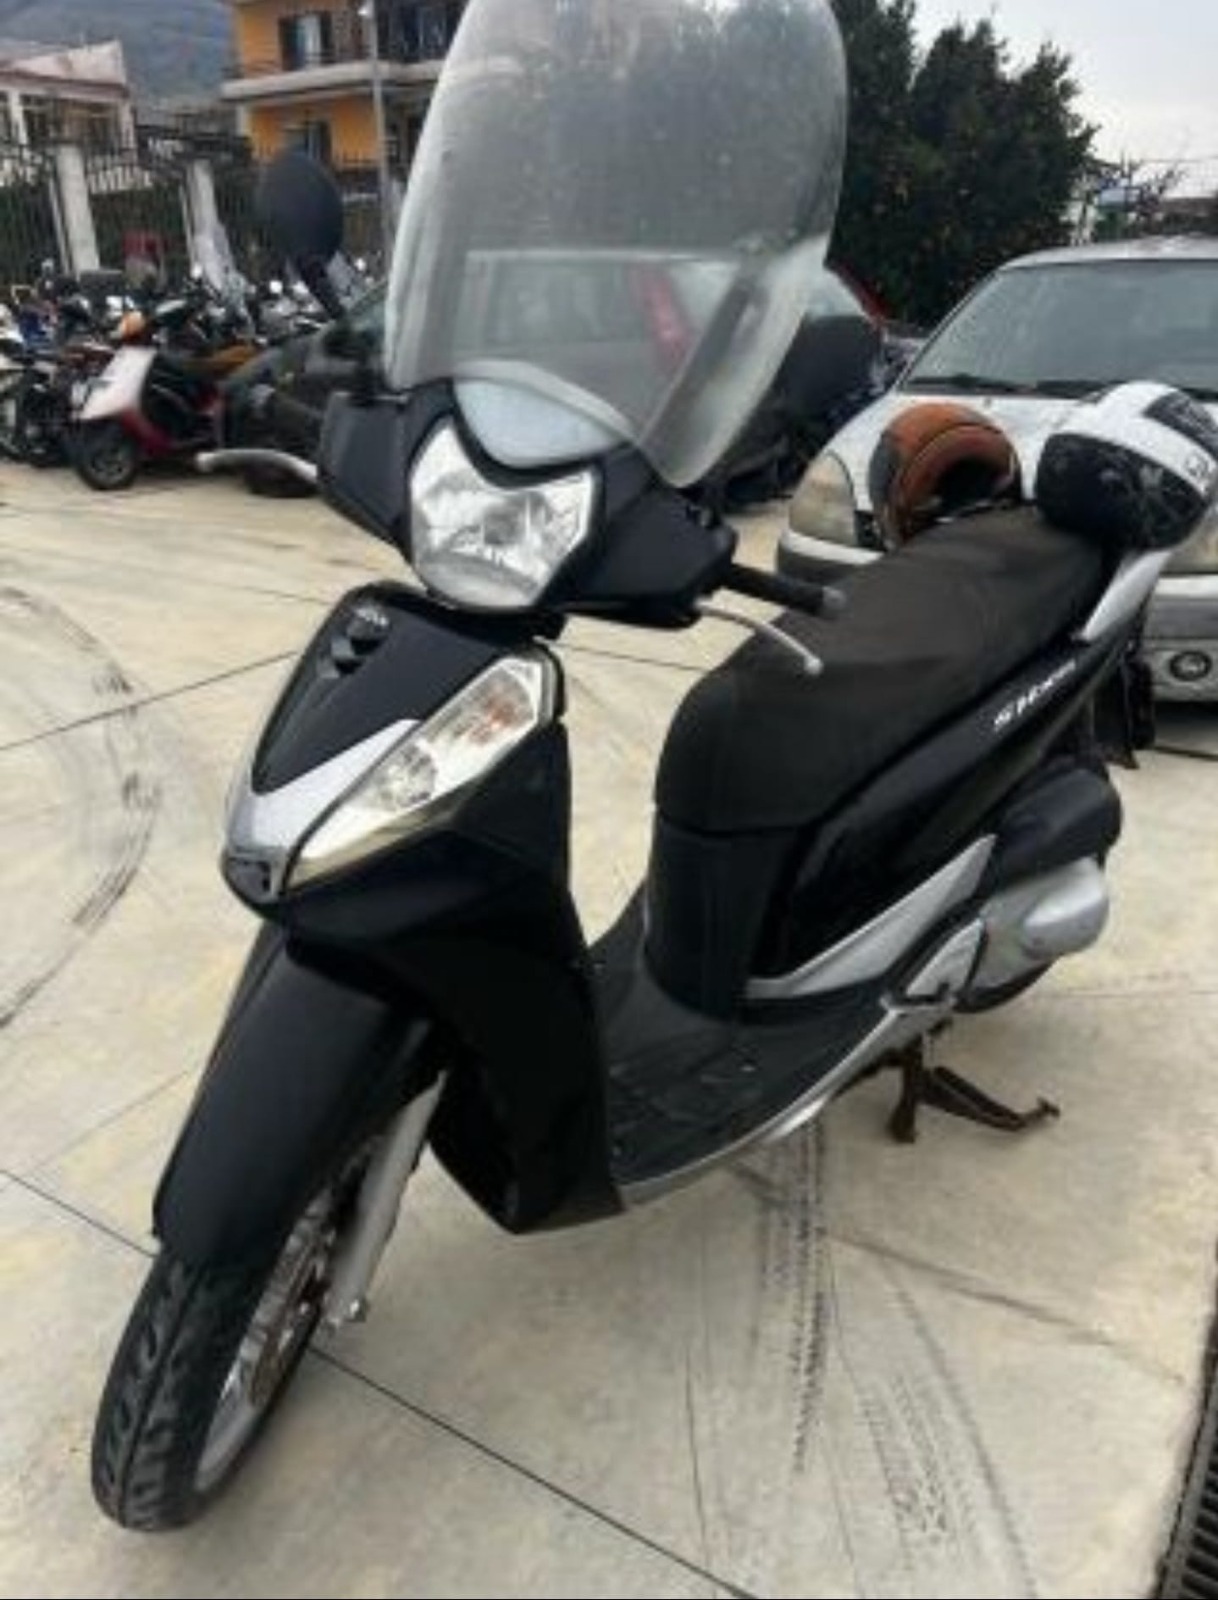 Motoveicolo confiscato assegnato gratuitamente alla Polizia municipale di Caggiano